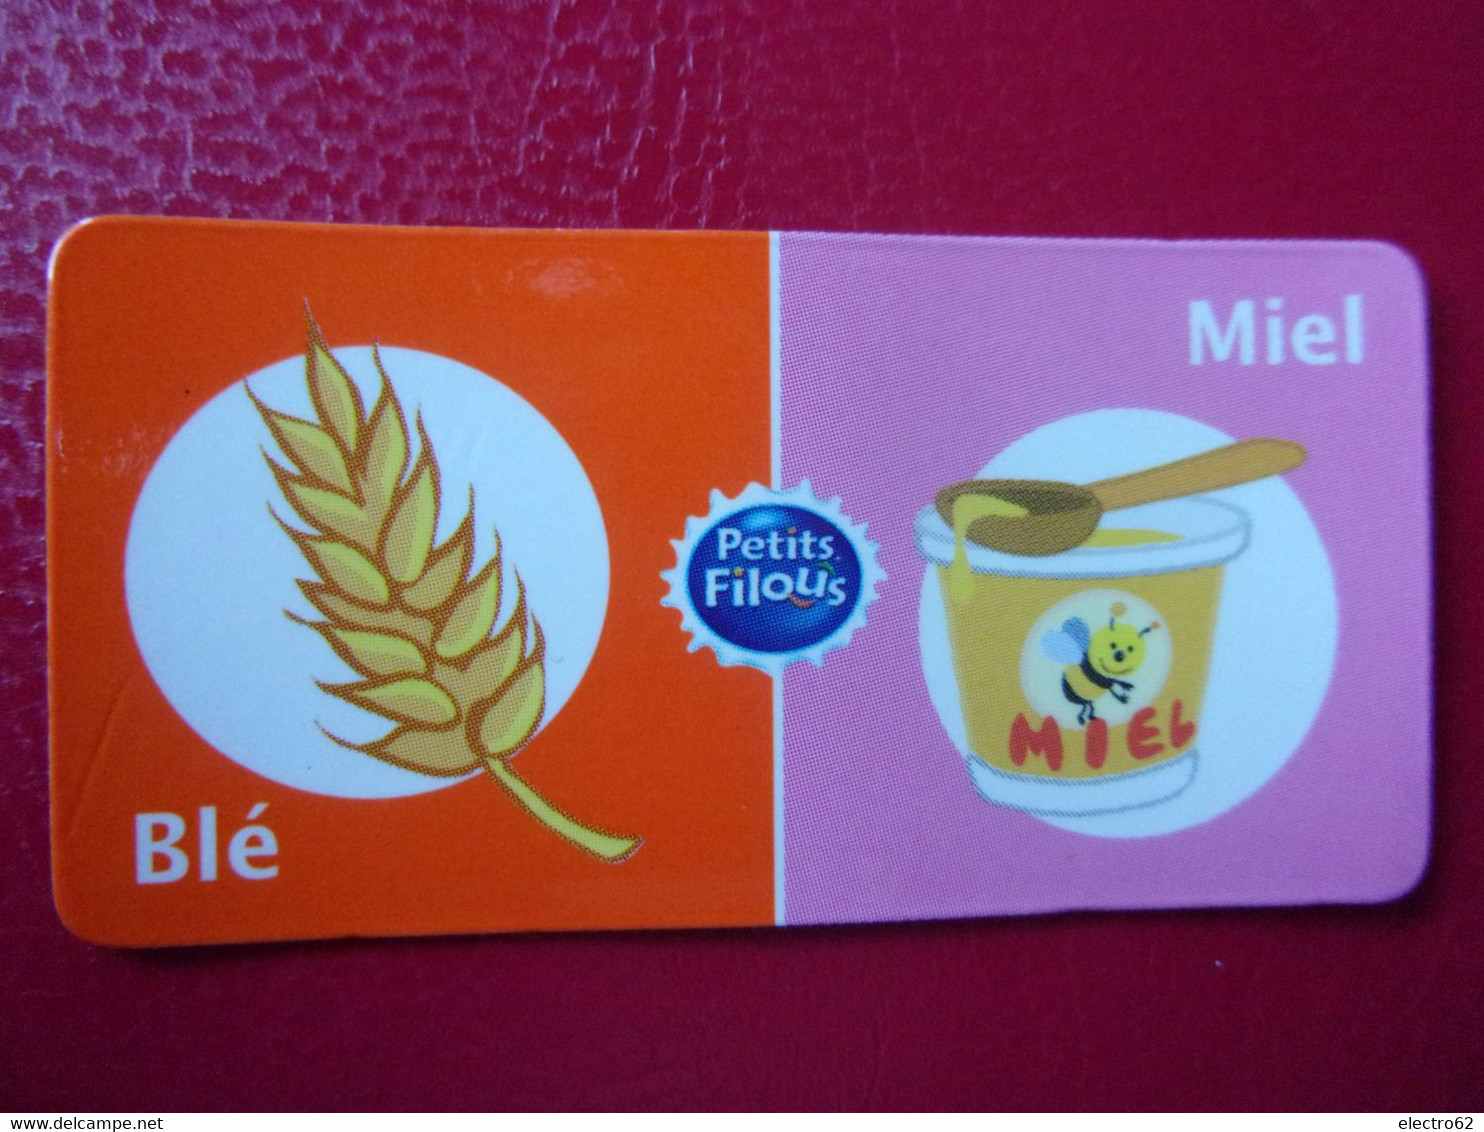 Magnet Petits Filous Blé Miel Magnets Mais Maïs Maiz Corn Majs Honning Honing Honey Miele - Publicidad